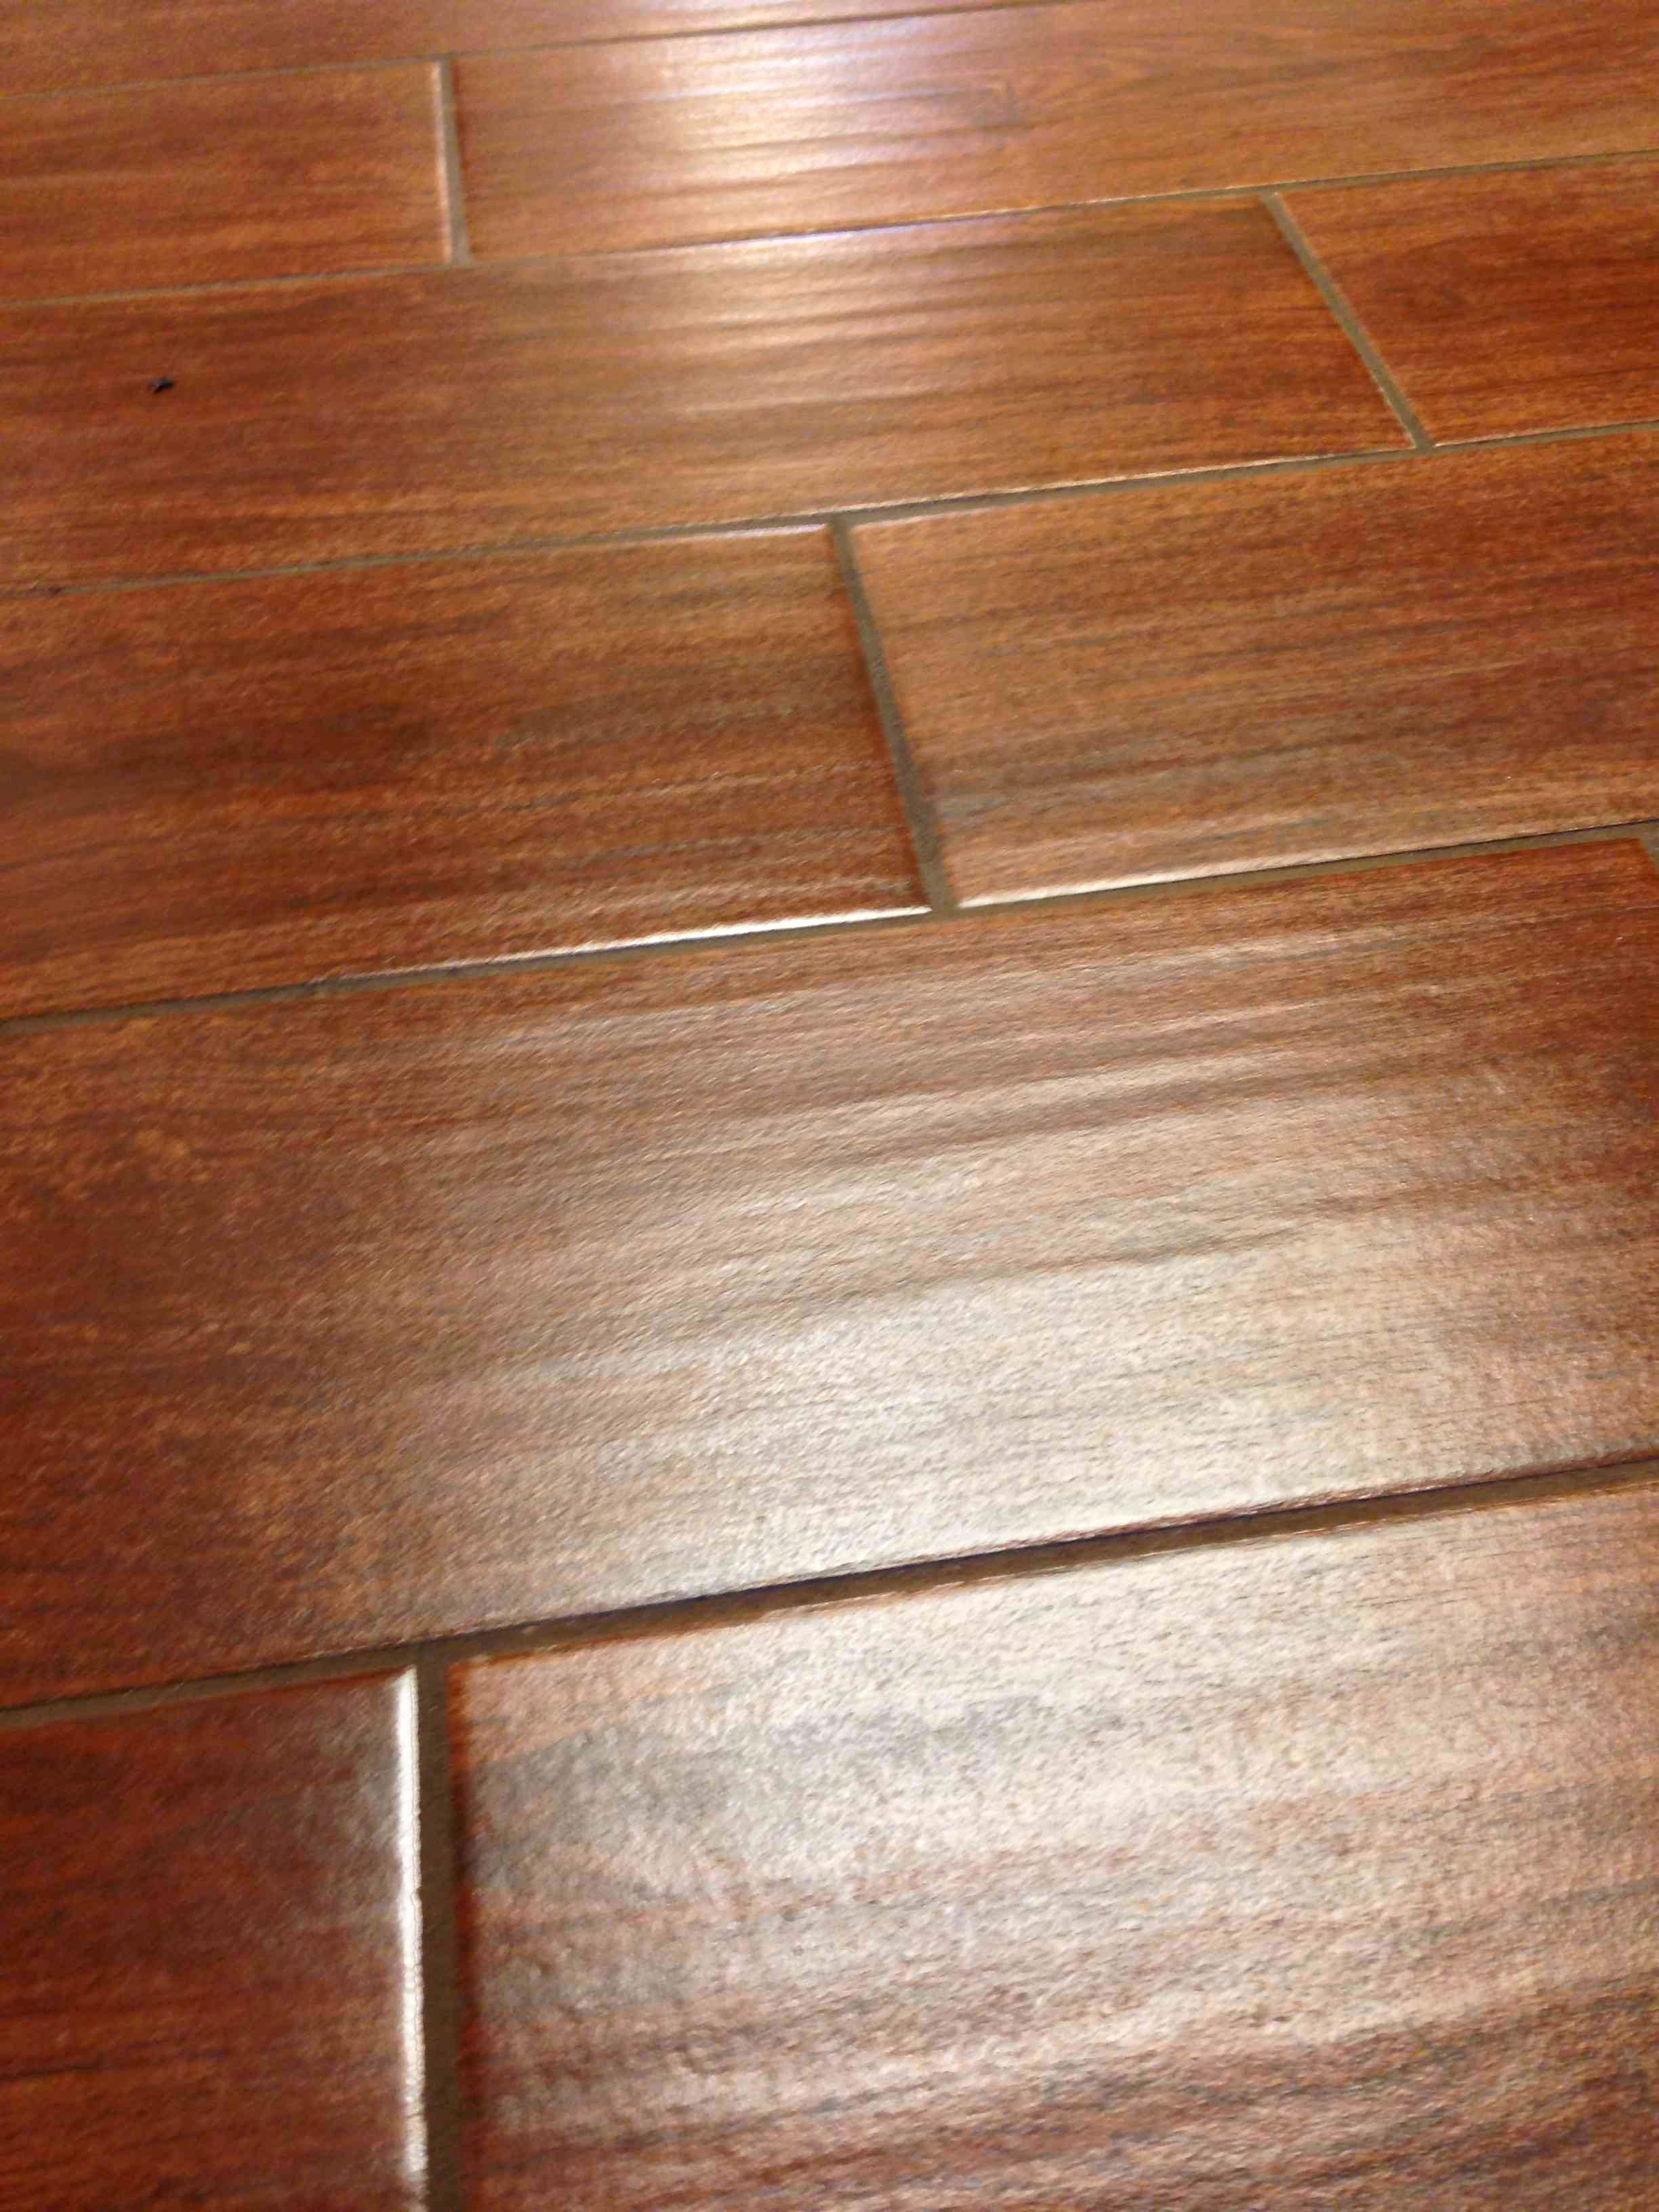 20 attractive Hardwood Flooring Imports 2024 free download hardwood flooring imports of prefinished wood flooring floor plan ideas in harwood flooring best tile that looks like hardwood floors elegant i pinimg 736x 0d 7b